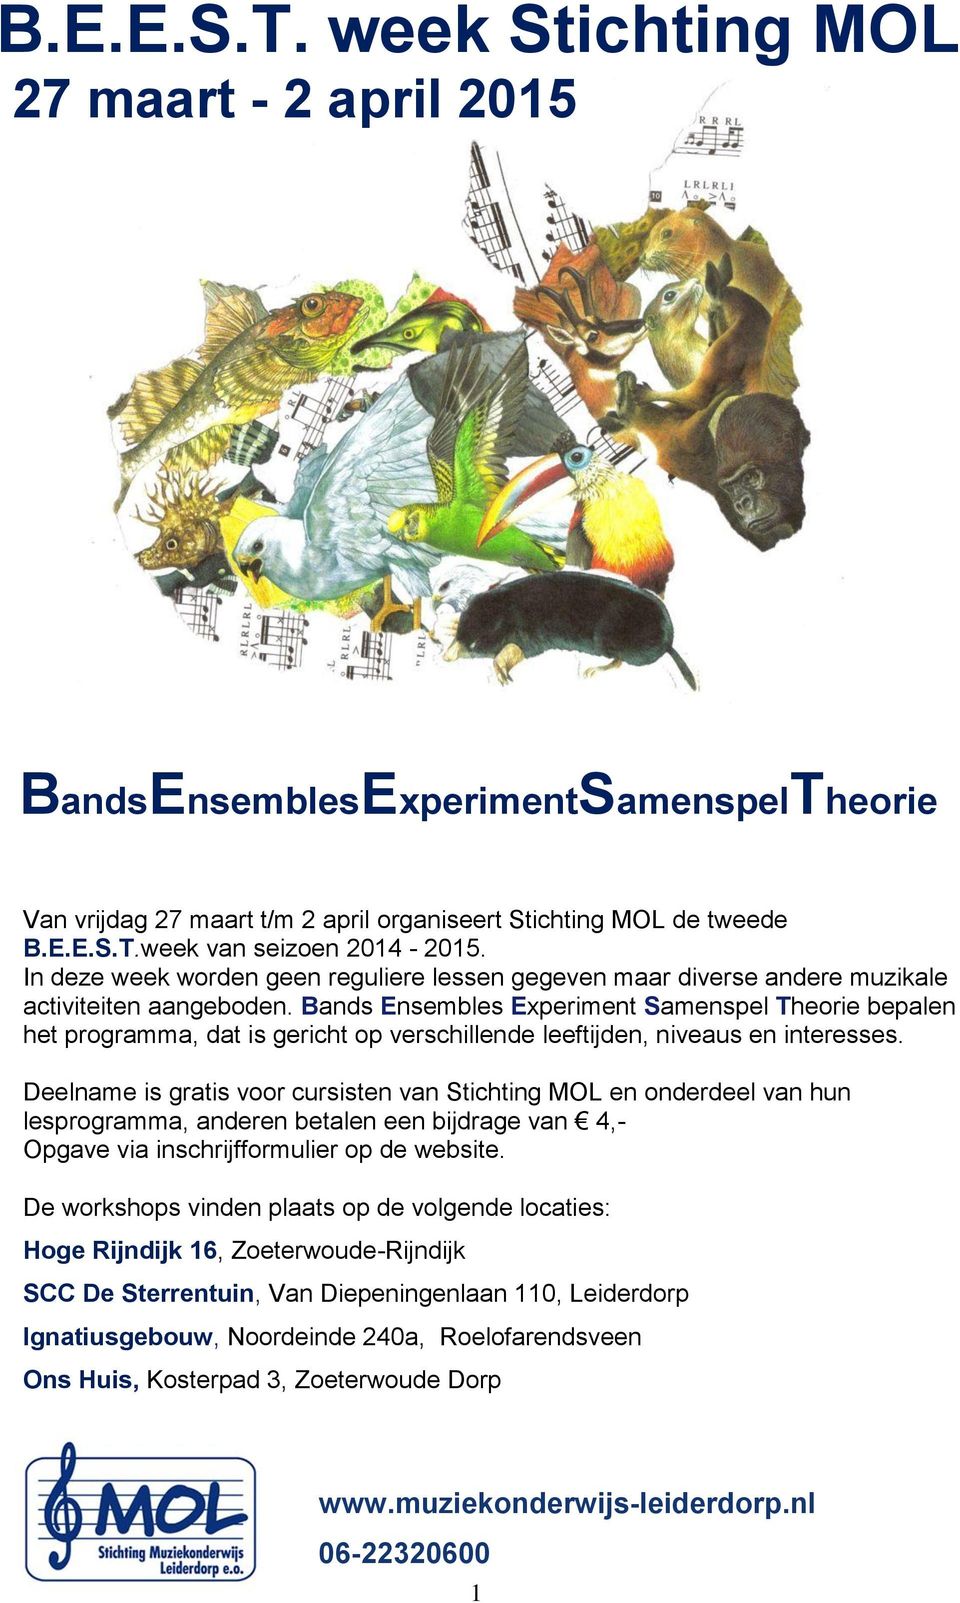 Bands Ensembles Experiment Samenspel Theorie bepalen het programma, dat is gericht op verschillende leeftijden, niveaus en interesses.